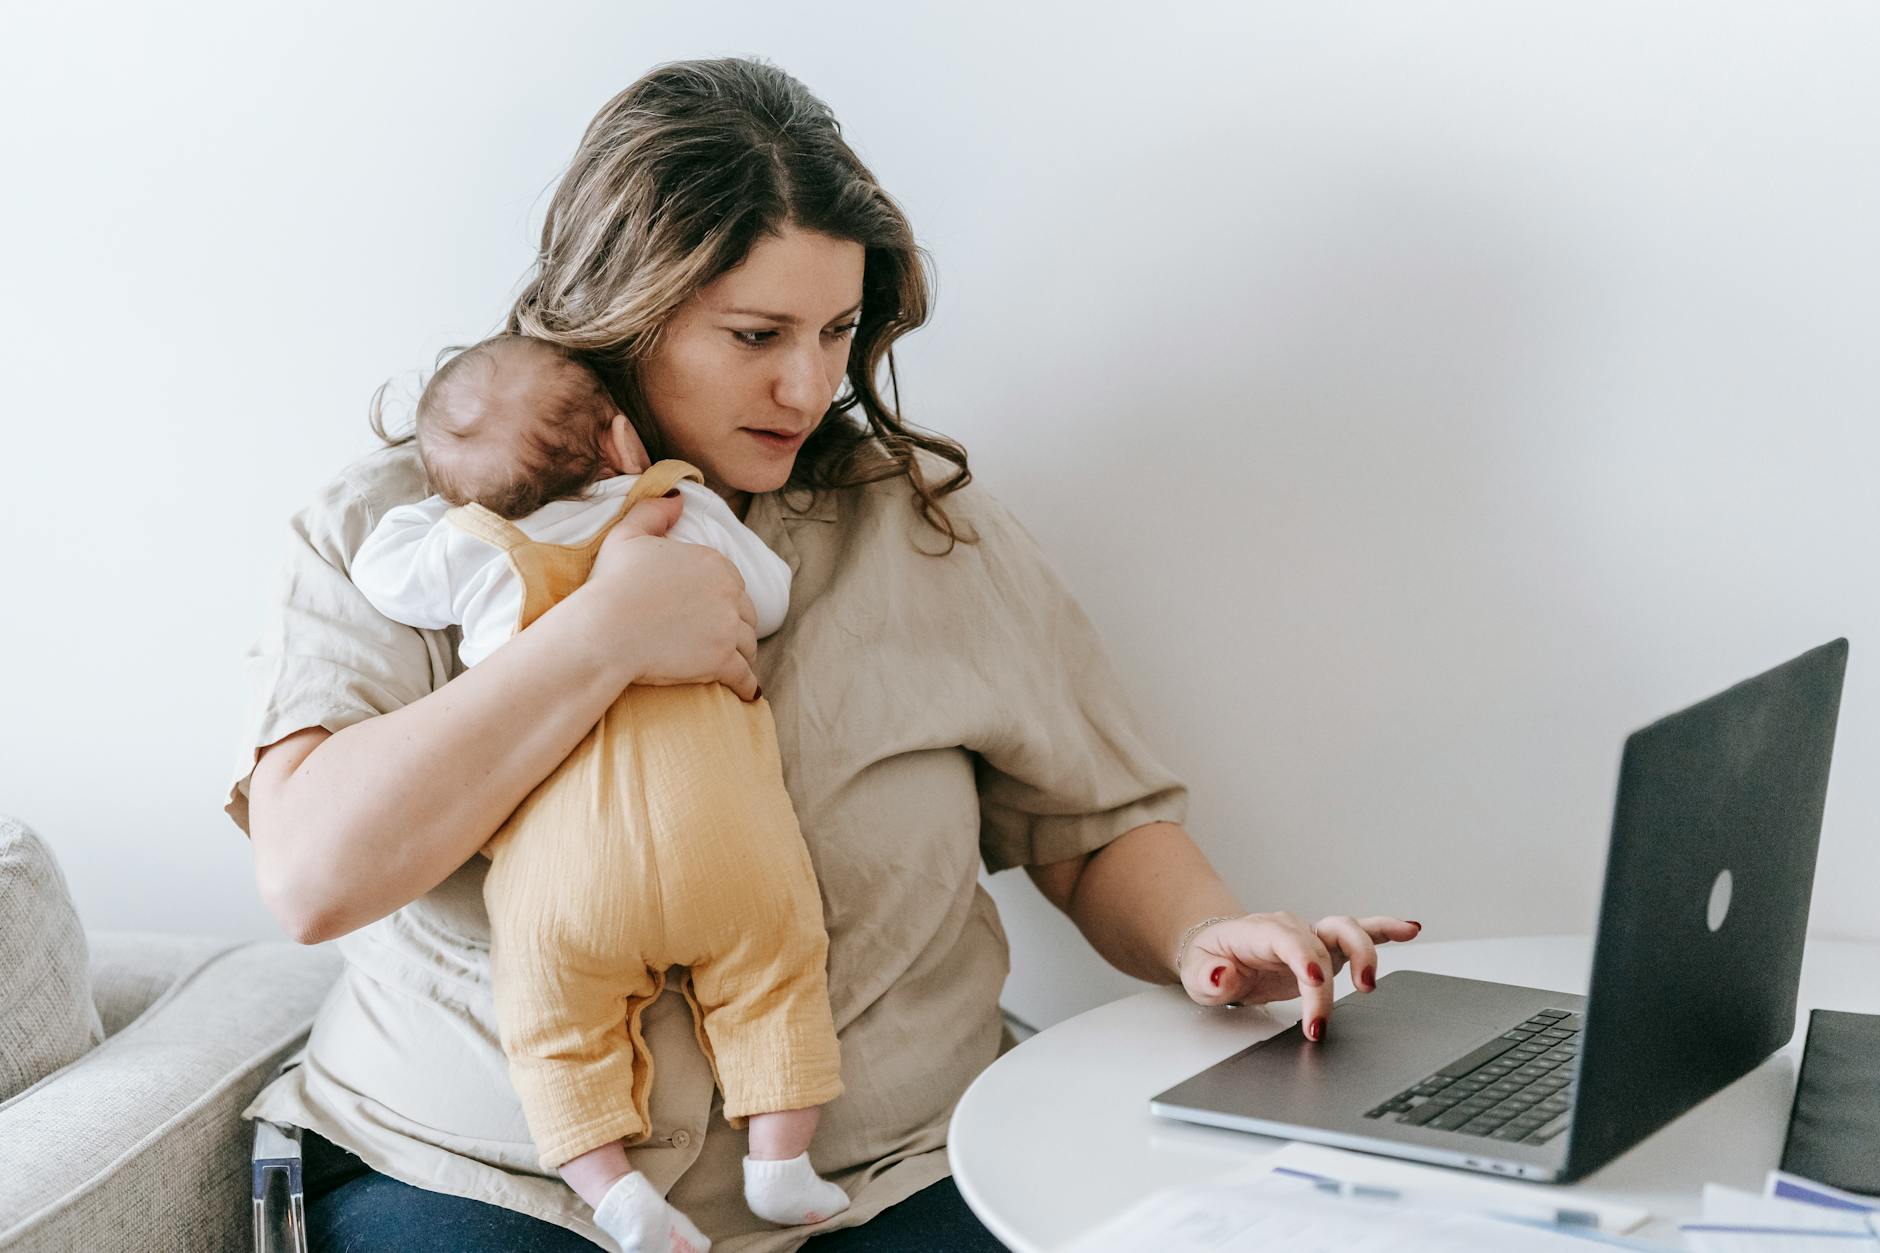 Συγκεντρωμένη νεαρή γυναίκα ελεύθερος επαγγελματίας που αγκαλιάζει το νεογέννητο ενώ κάθεται στο τραπέζι και εργάζεται εξ αποστάσεως σε φορητό υπολογιστή στο σπίτι